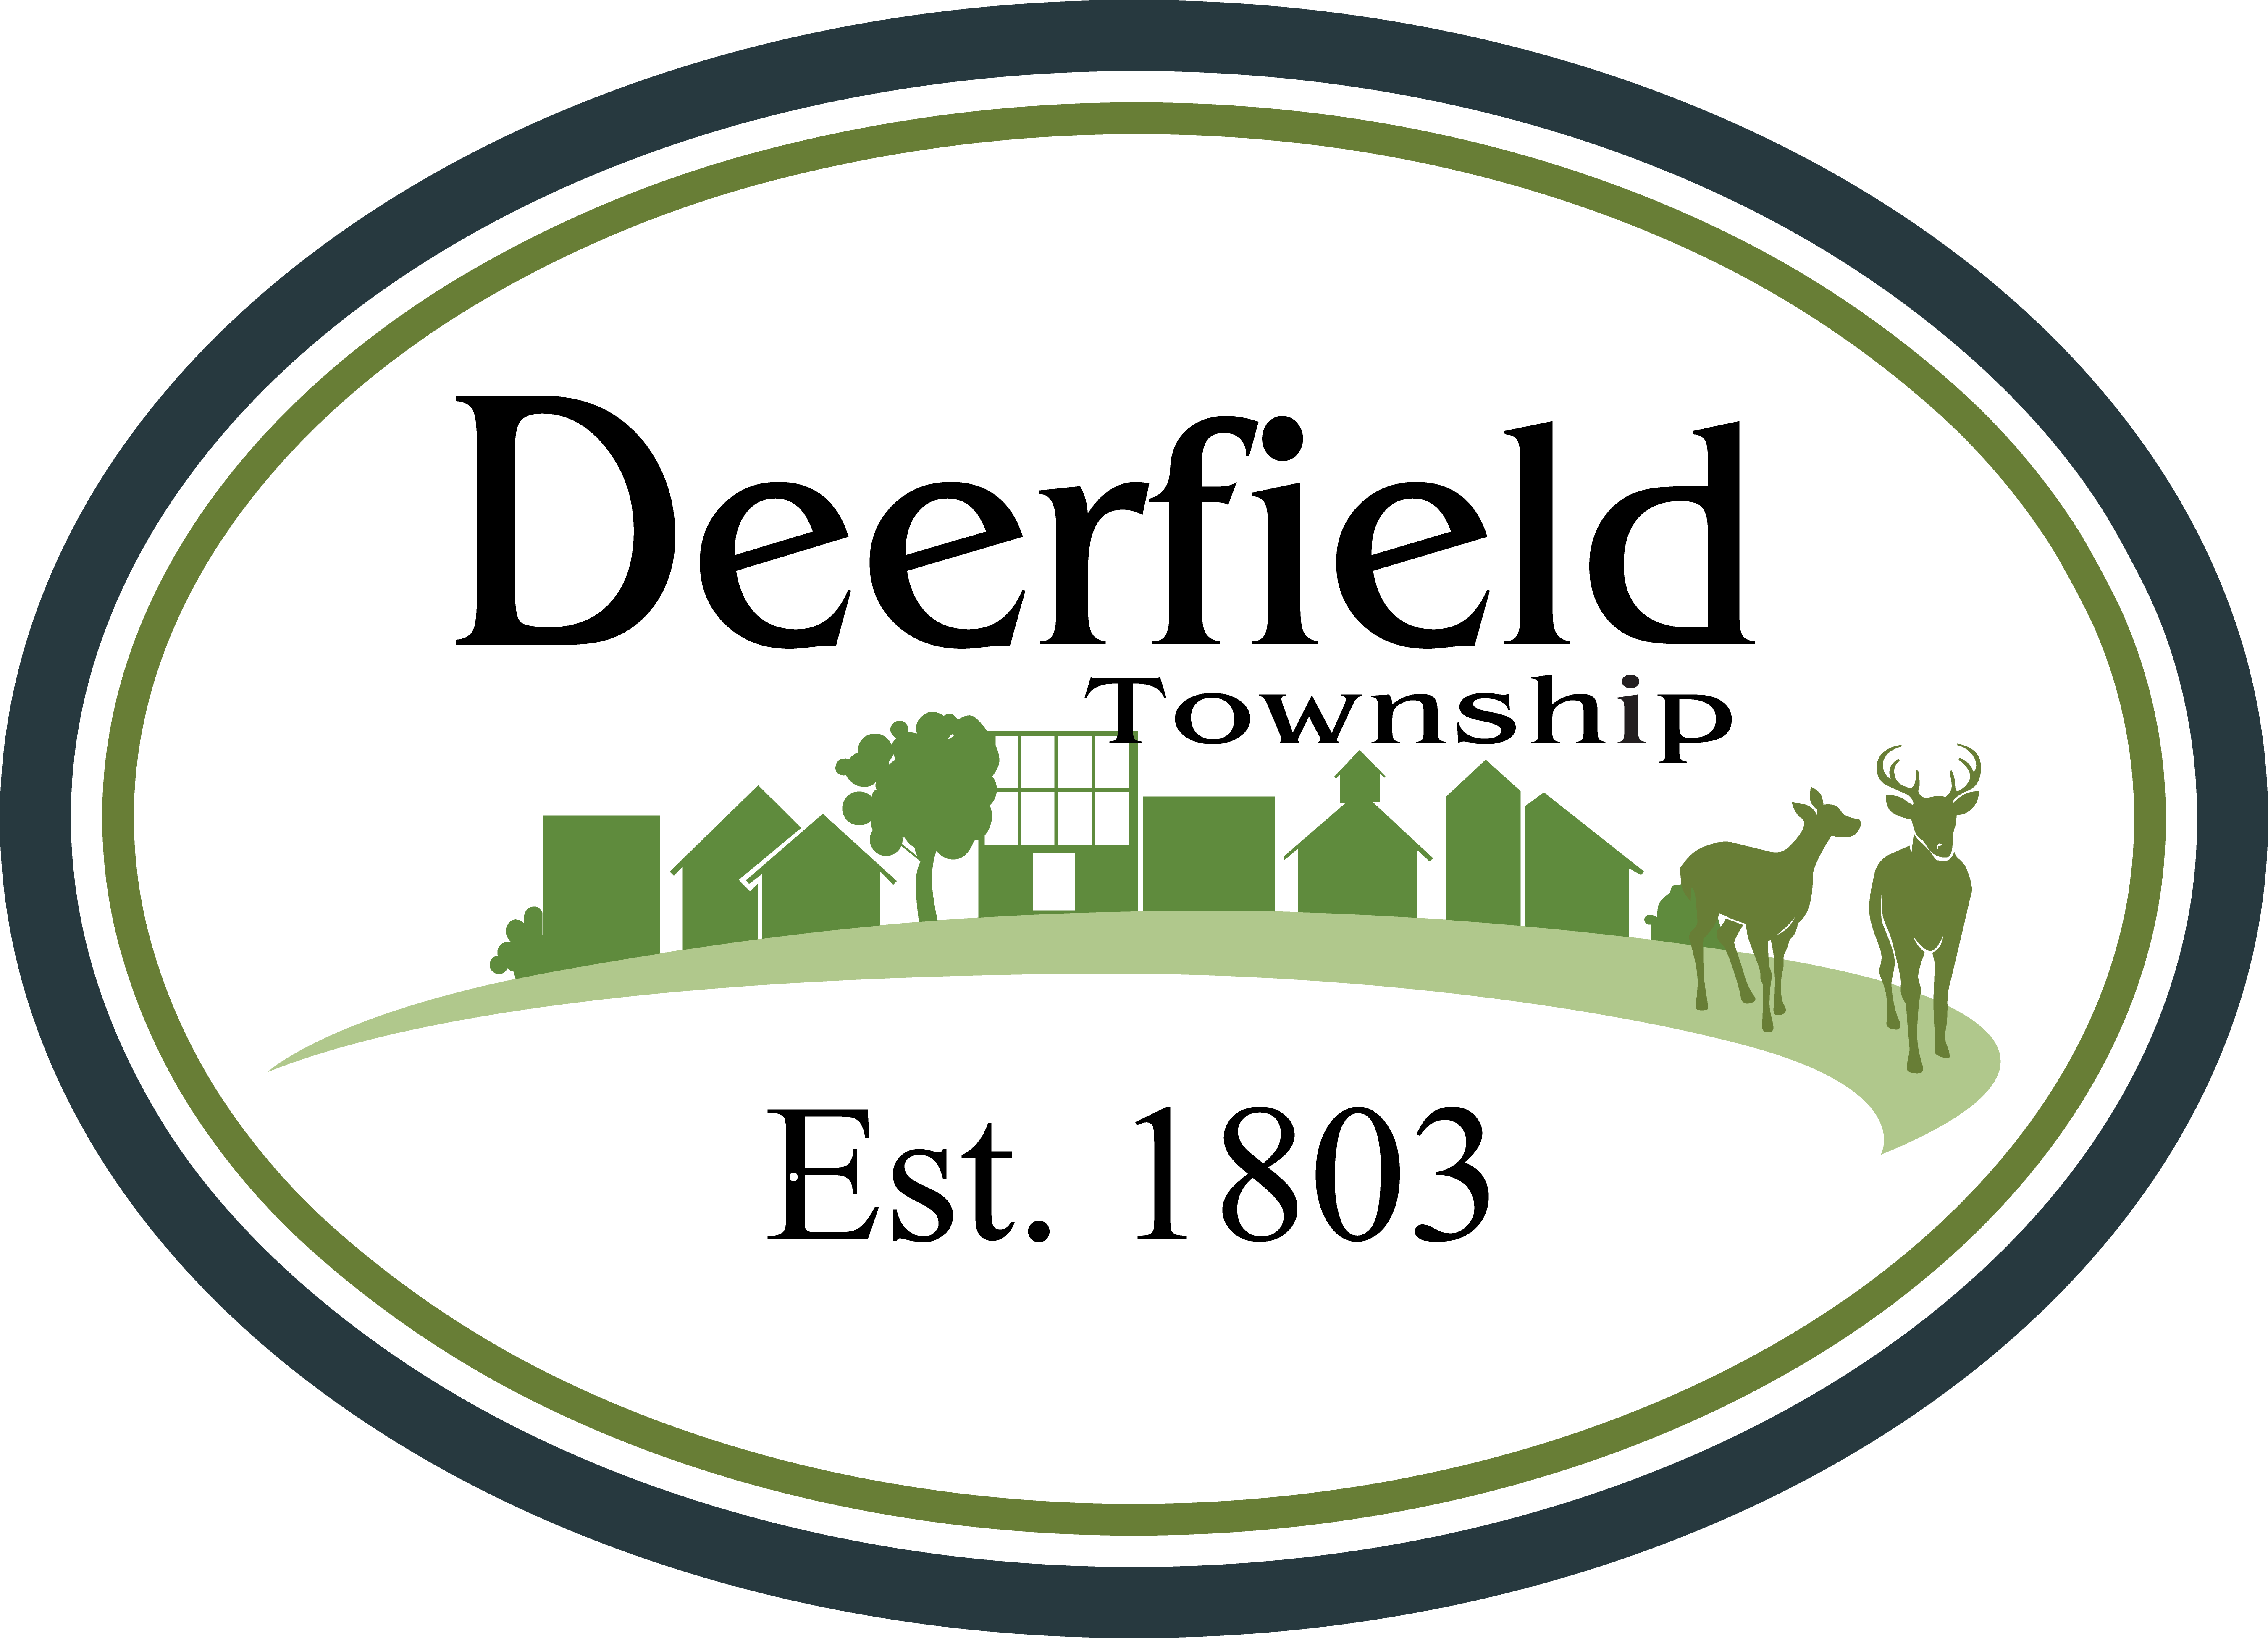 Deerfield Township Logo